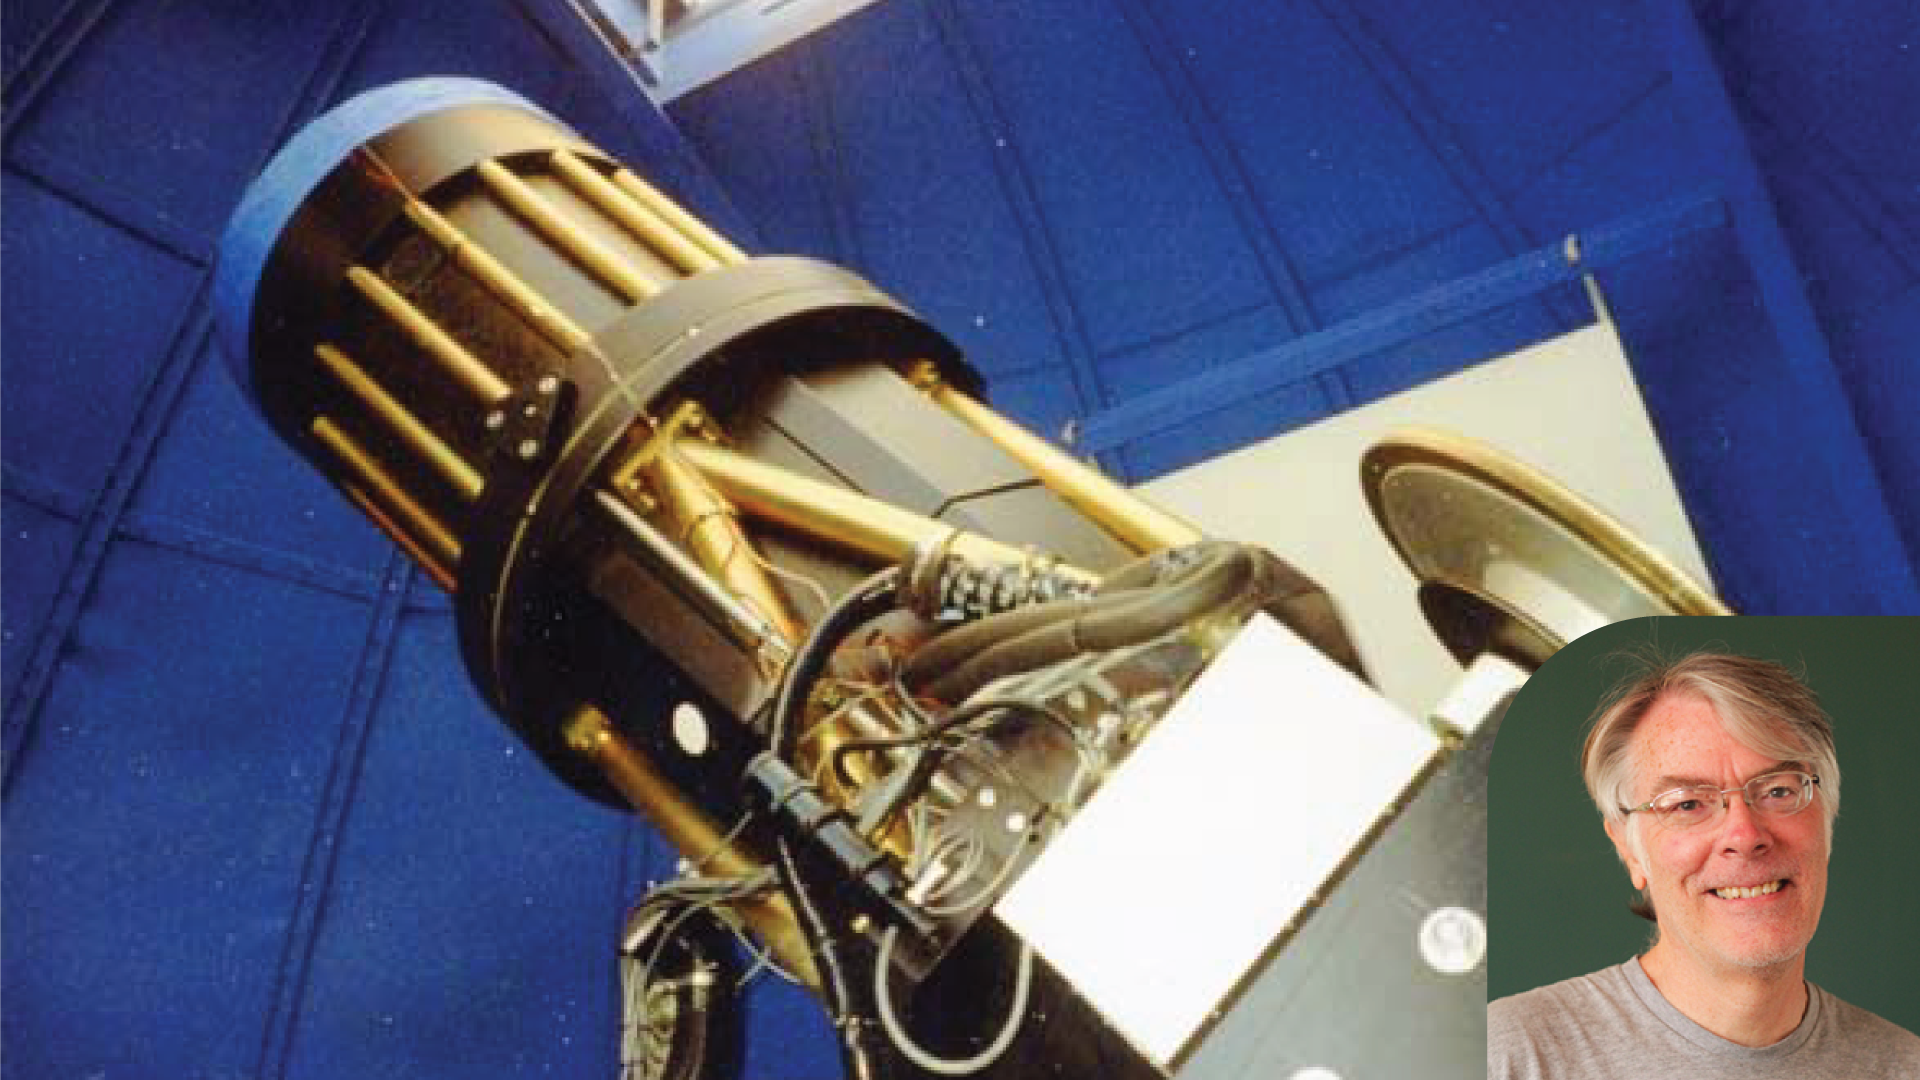 The LONEOS 58cm f/2 telescope with Brian Skiff